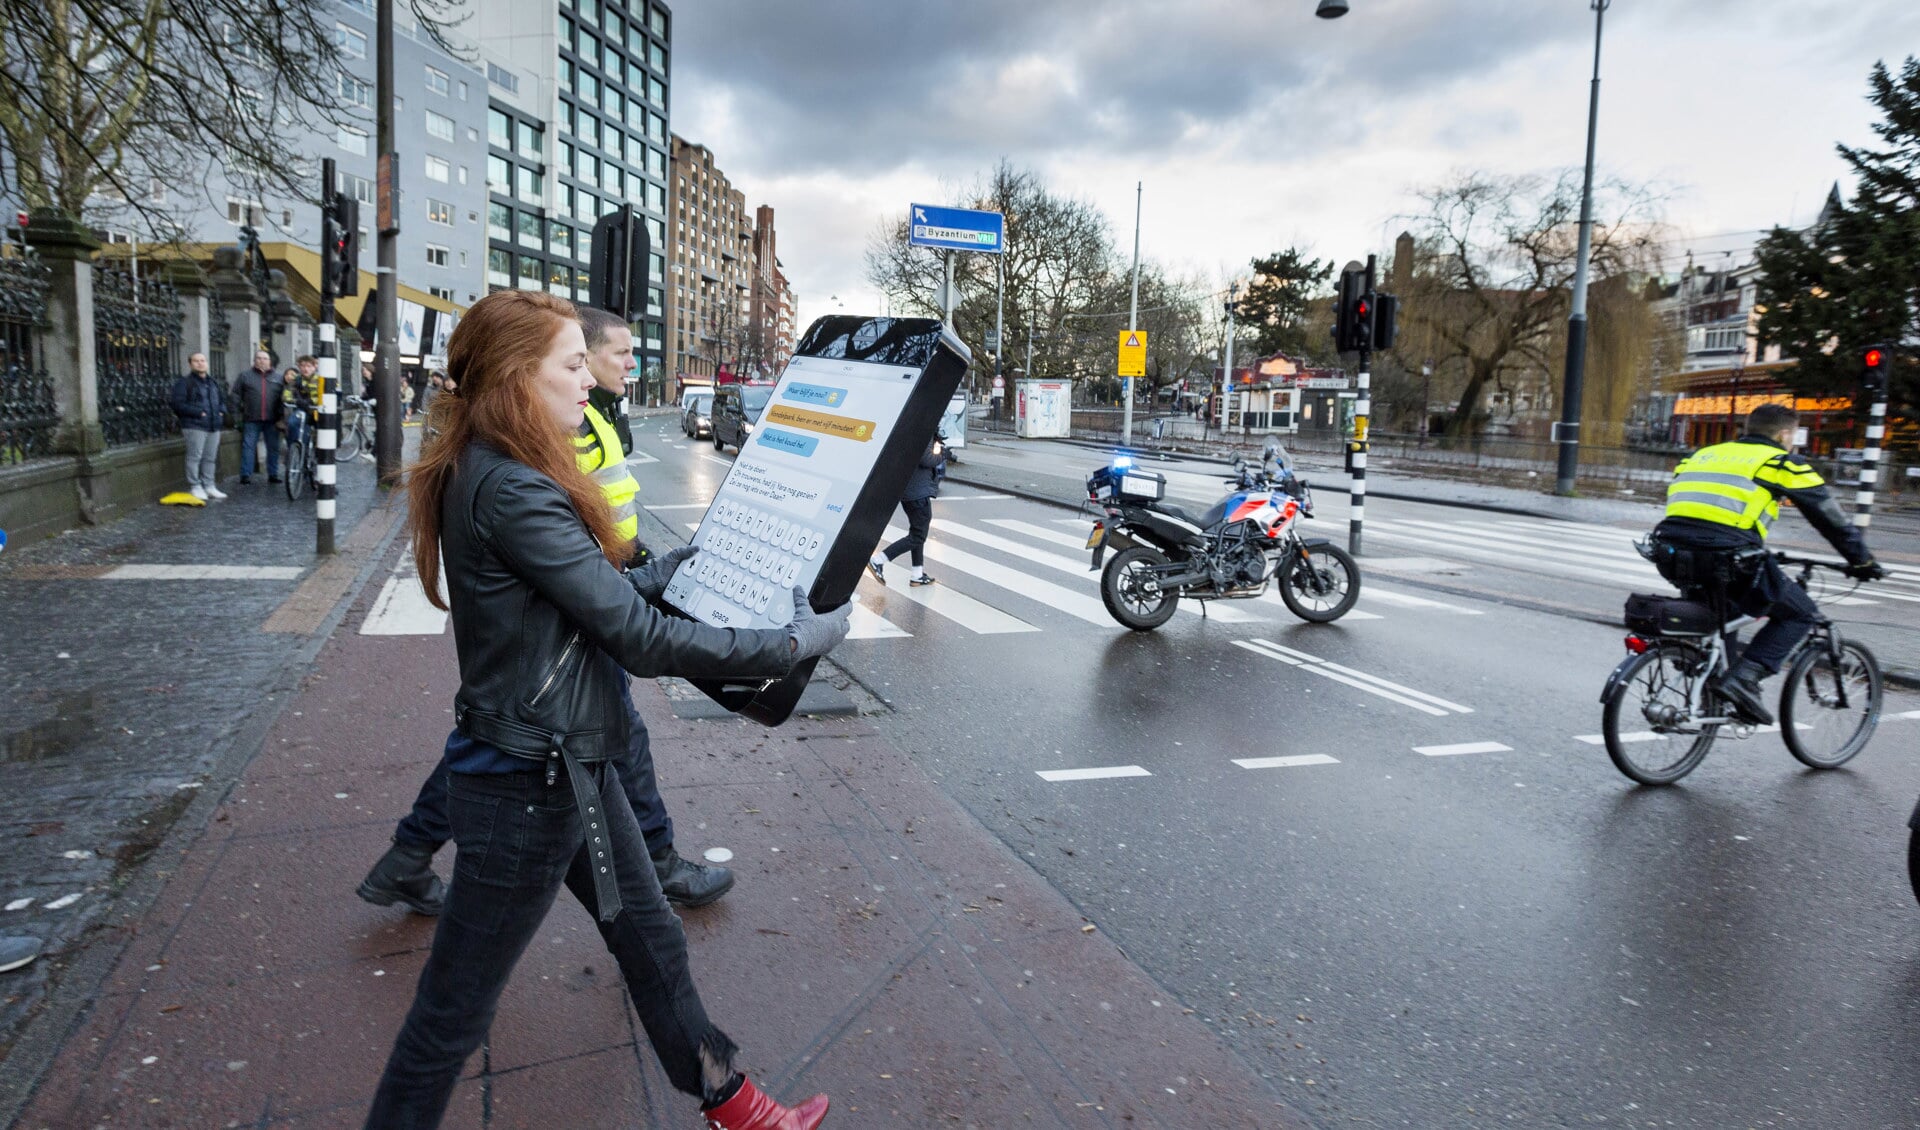 Amsterdamse politie zet verkeer Stadhouderskade stil voor 'superbelangrijk appje'. (Foto: Guido Benschop) 